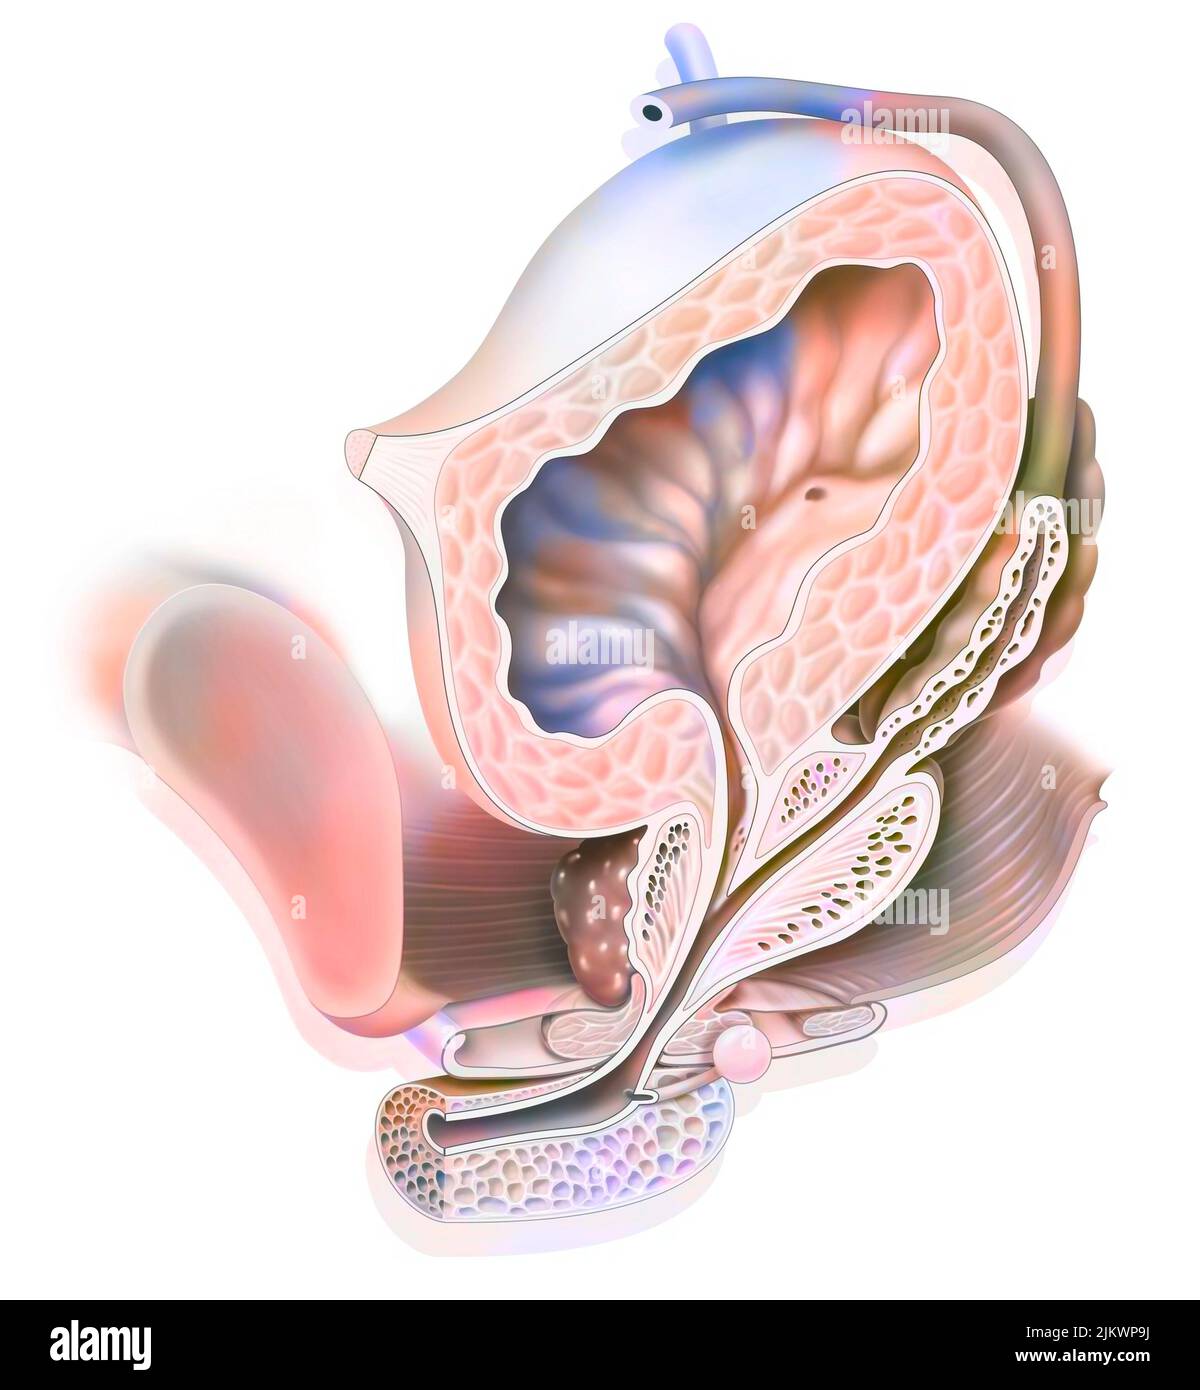 Anatomie du système urogénital mâle avec uretère, vessie. Banque D'Images